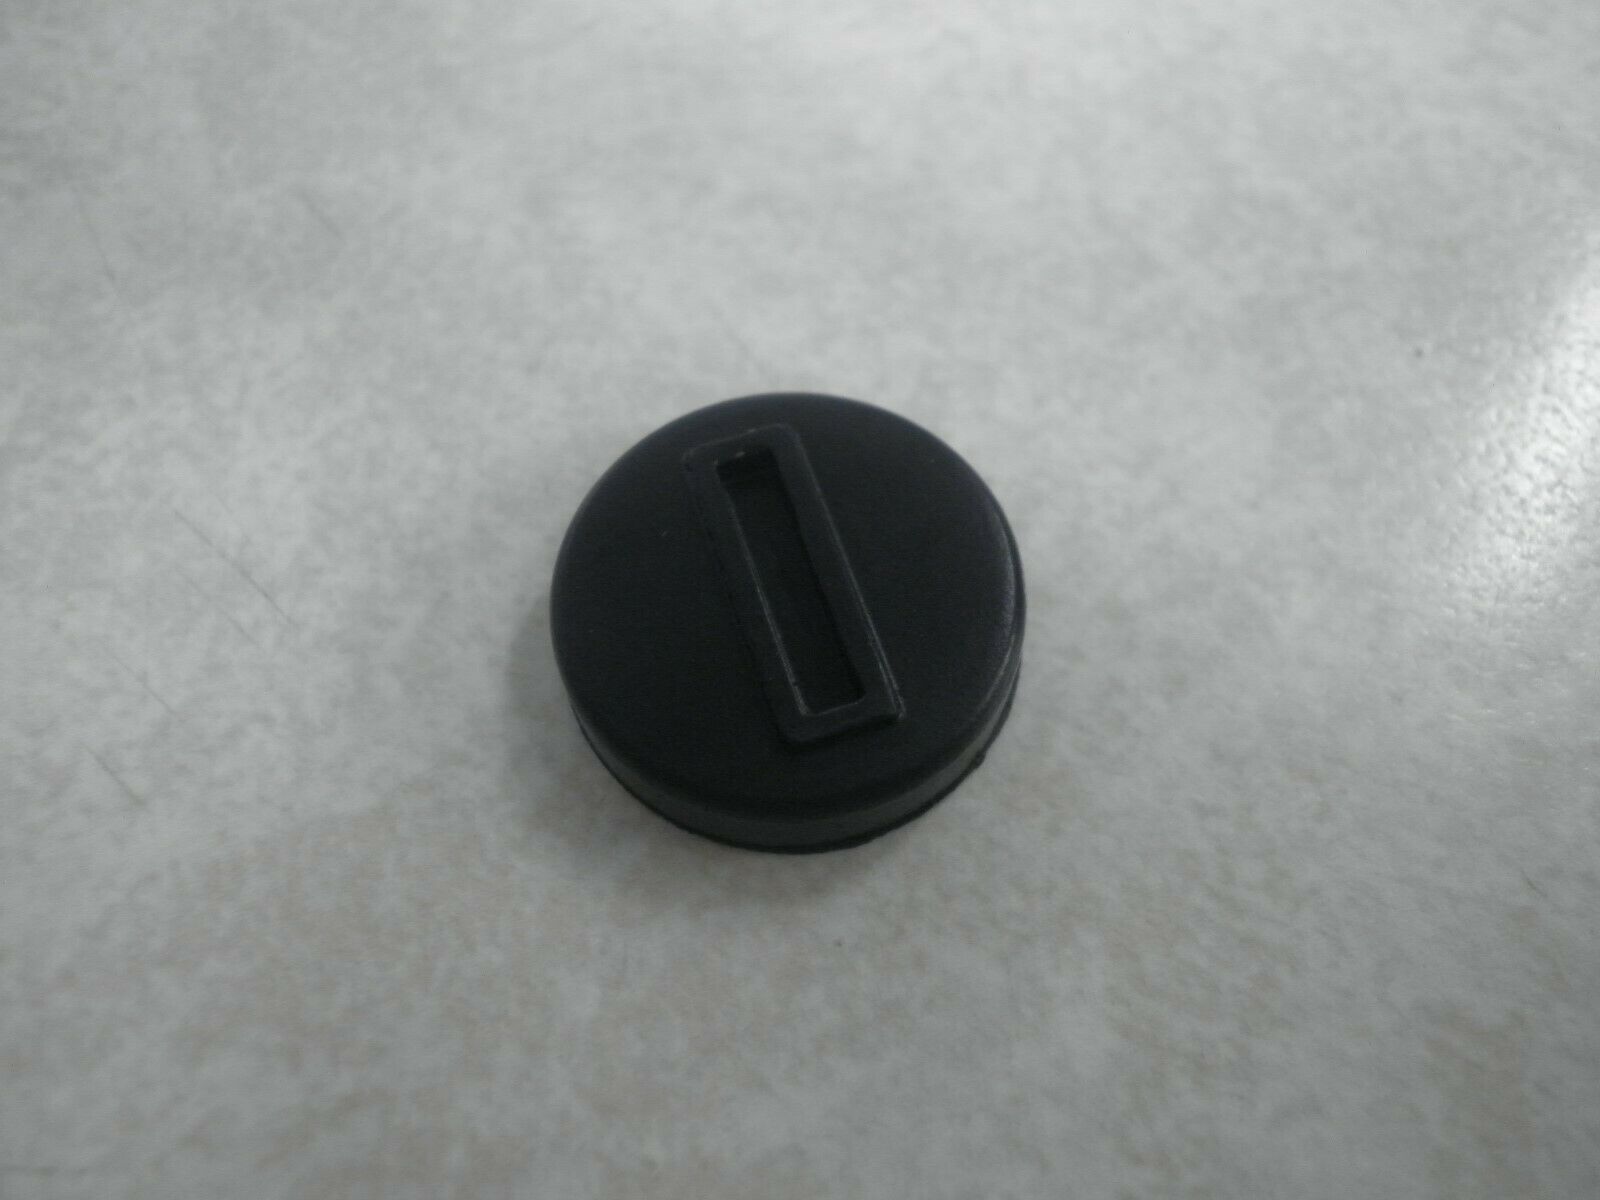 New Oem Yamaha Marine Rubber Key Switch Rubber Cap - 6k1-82532-00-00